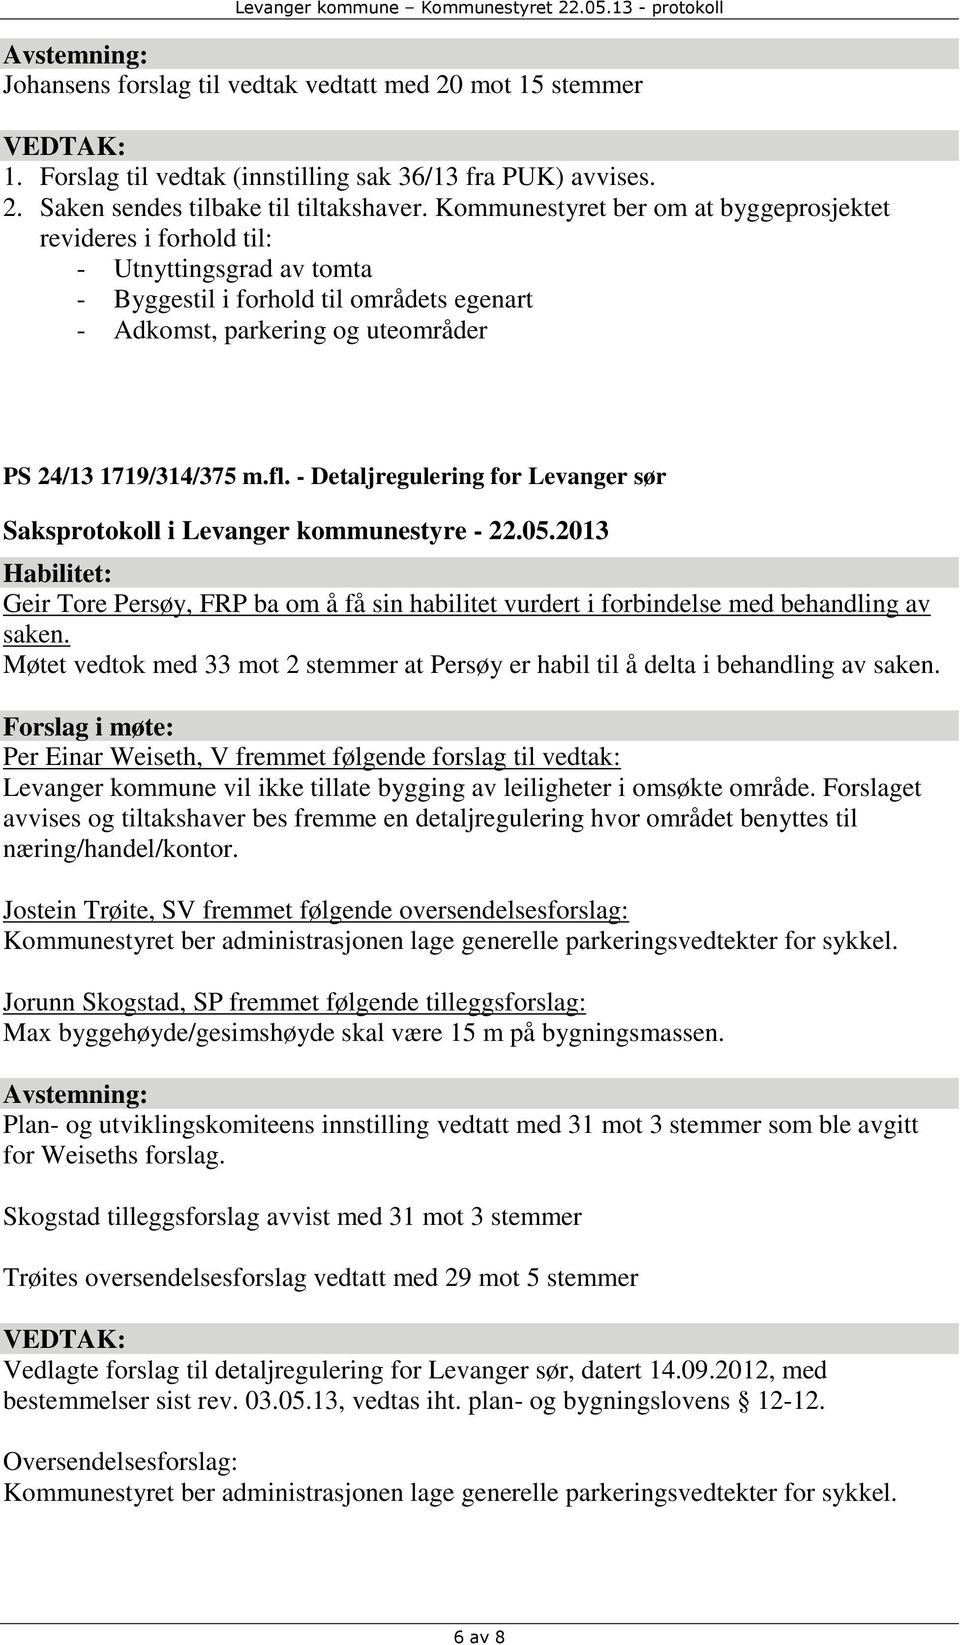 - Detaljregulering for Levanger sør Habilitet: Geir Tore Persøy, FRP ba om å få sin habilitet vurdert i forbindelse med behandling av saken.